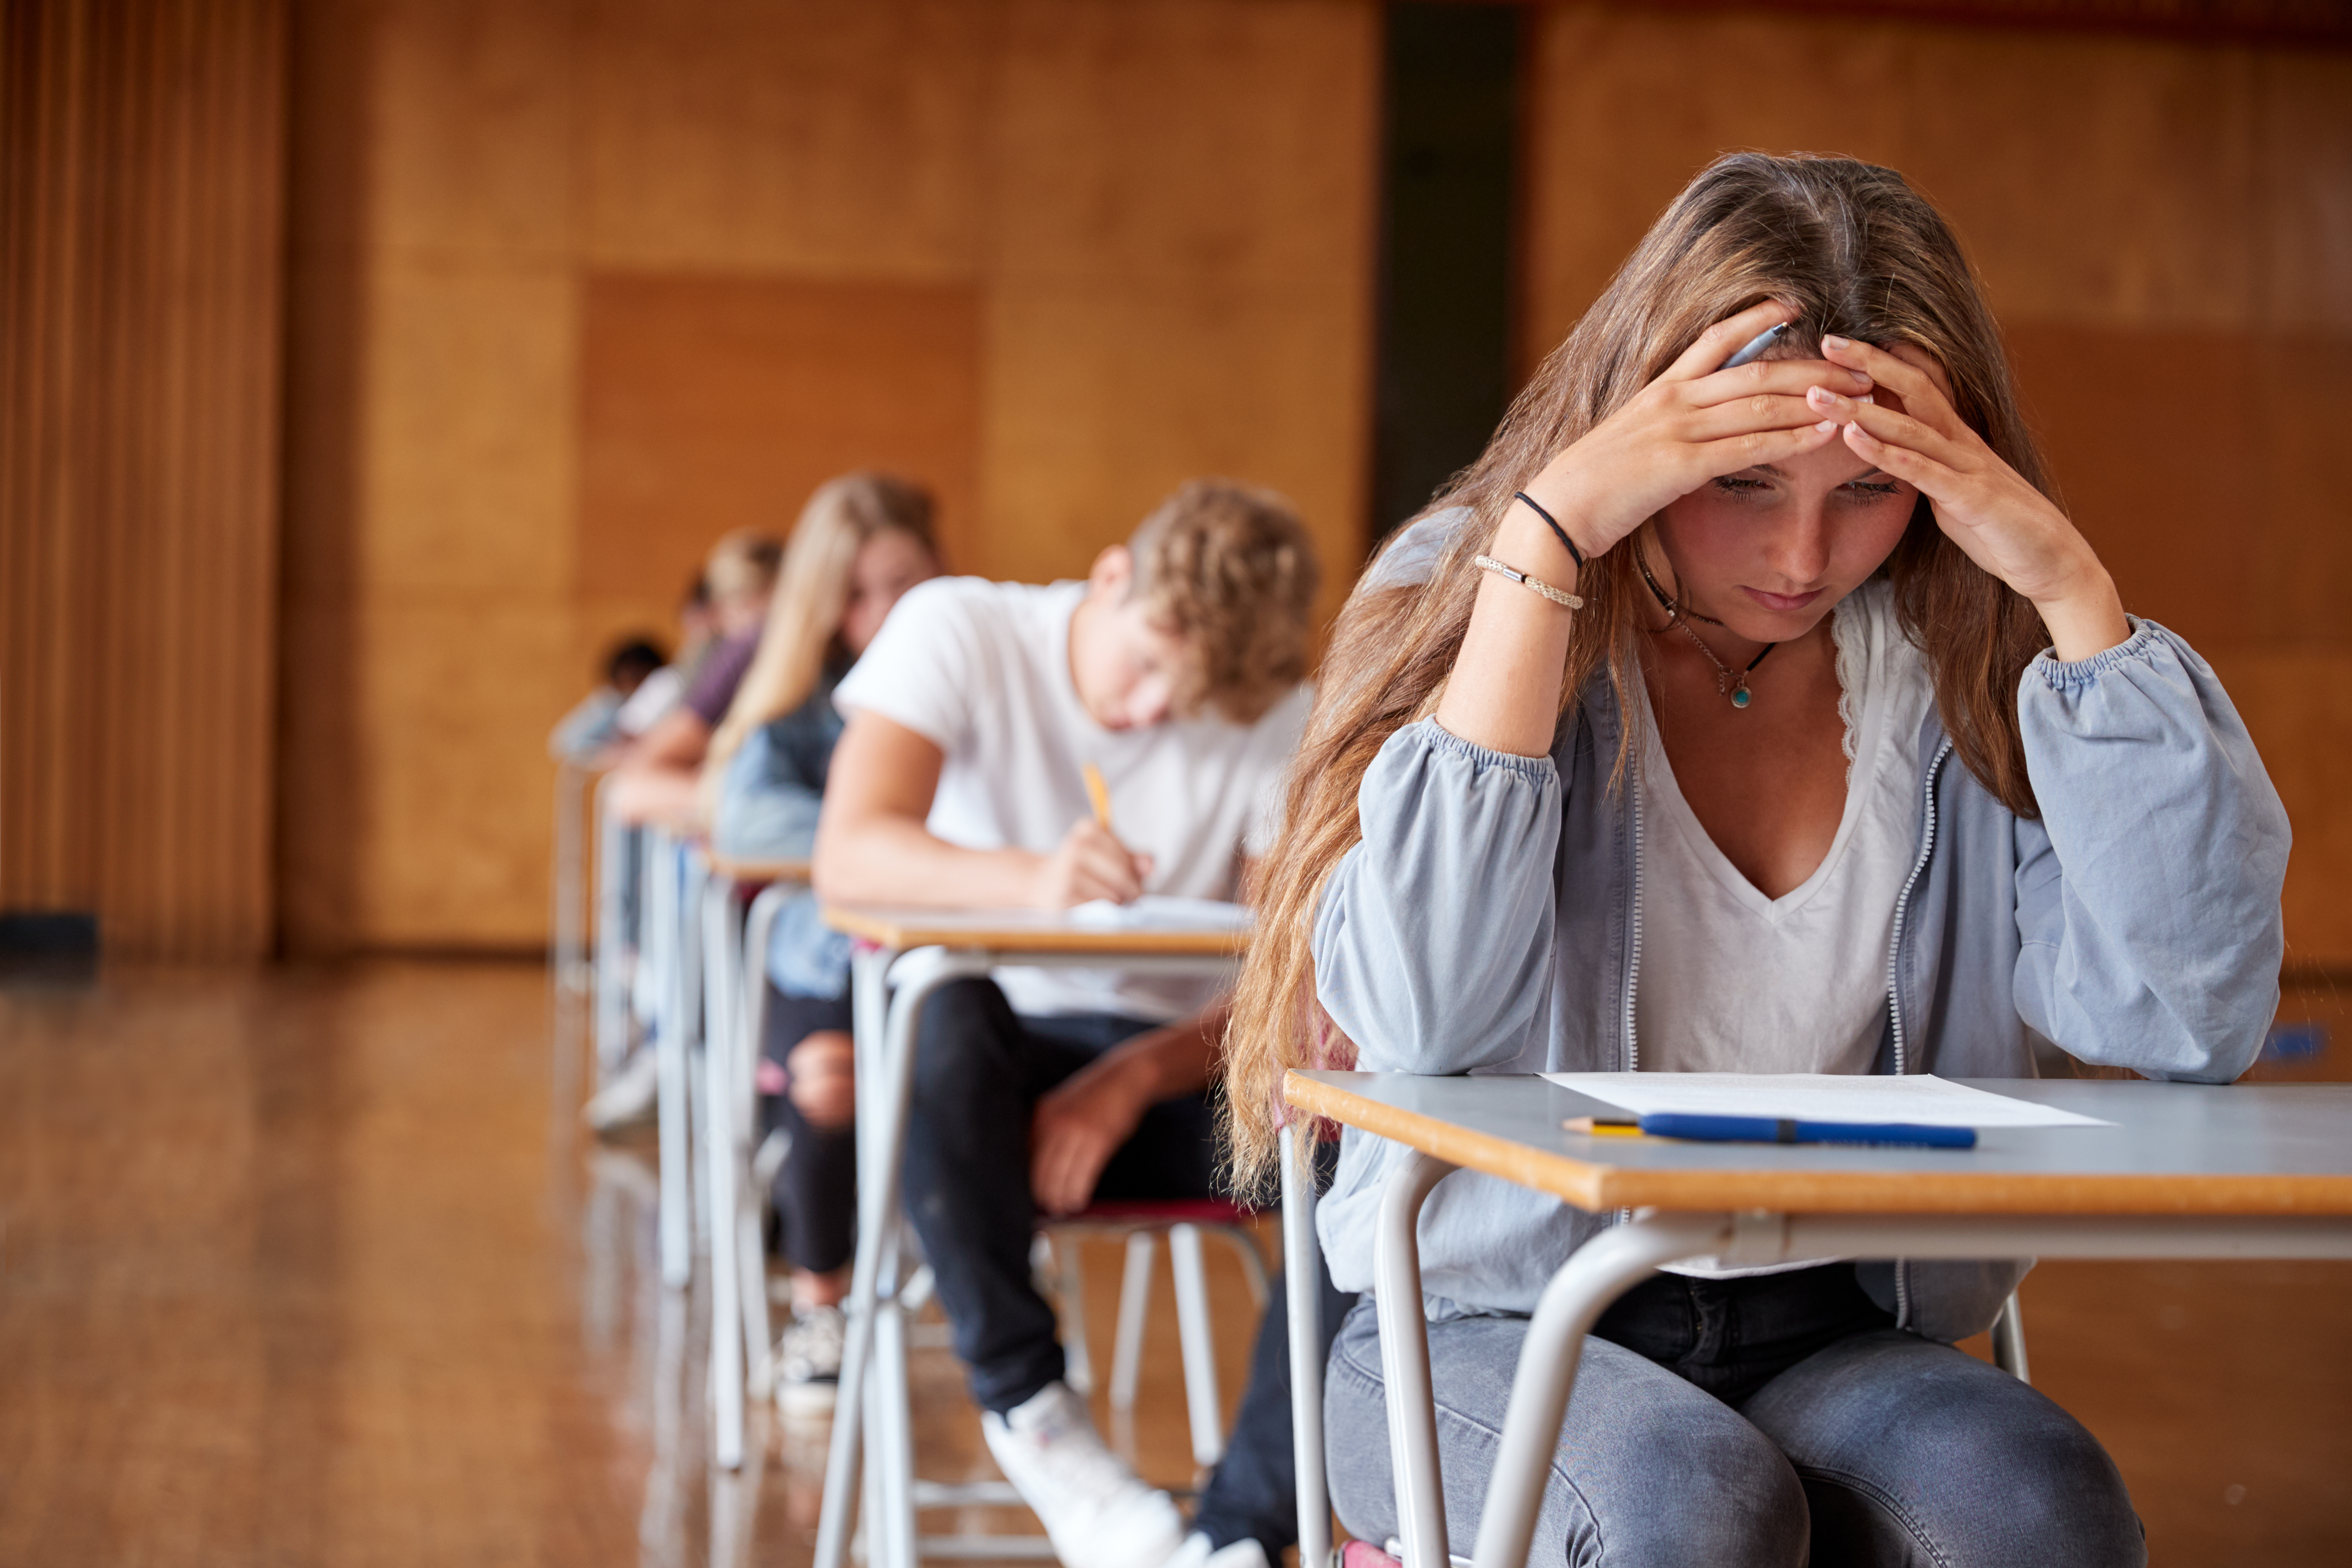 Étudiants passant un examen | Source : Shutterstock